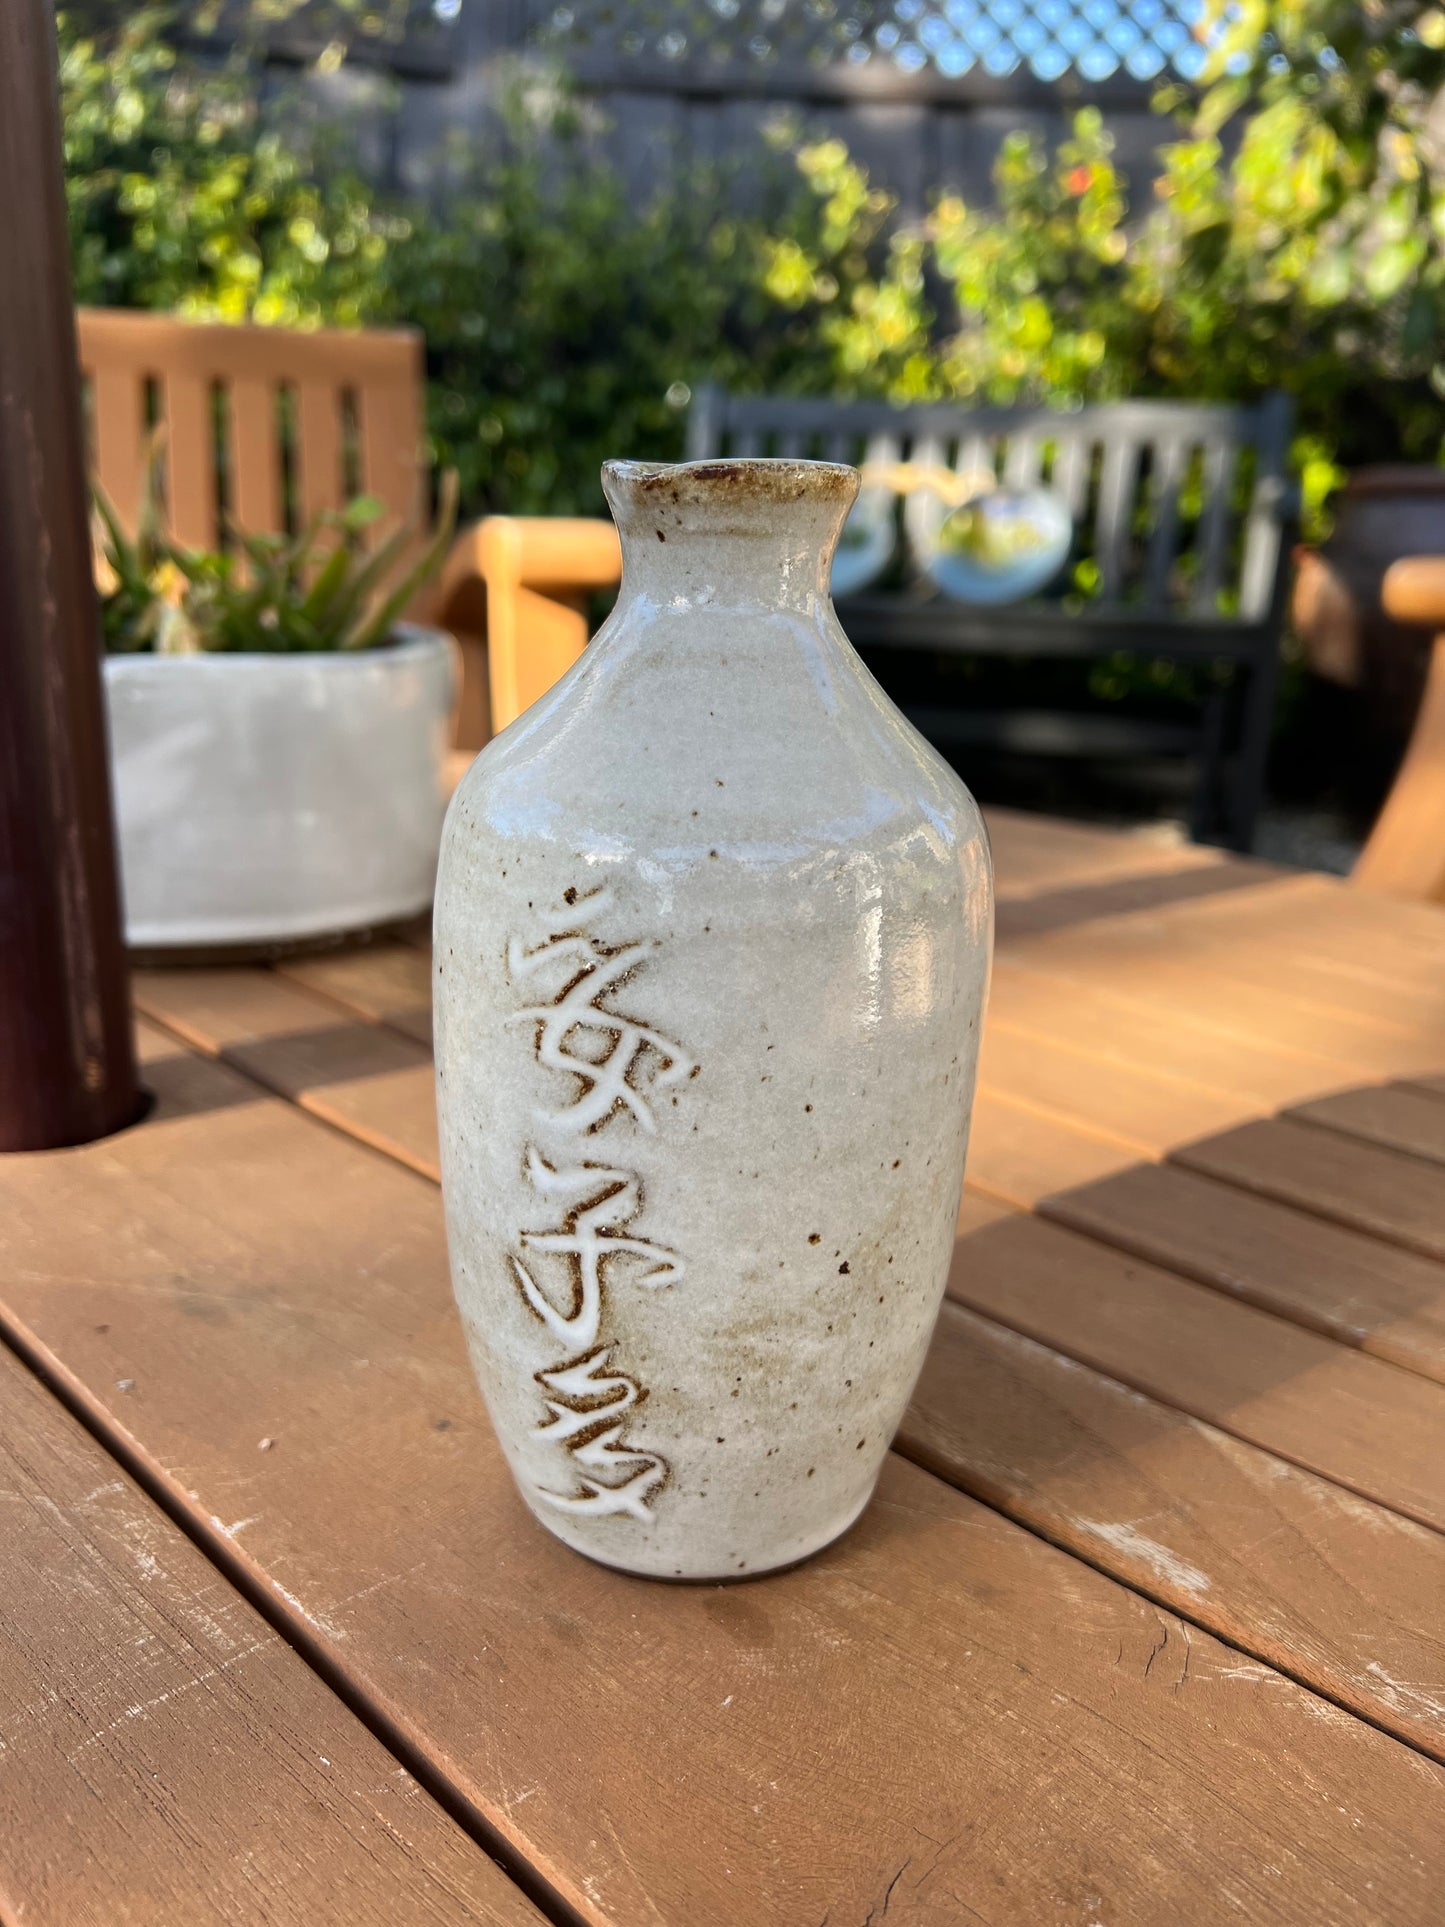 Sake Set